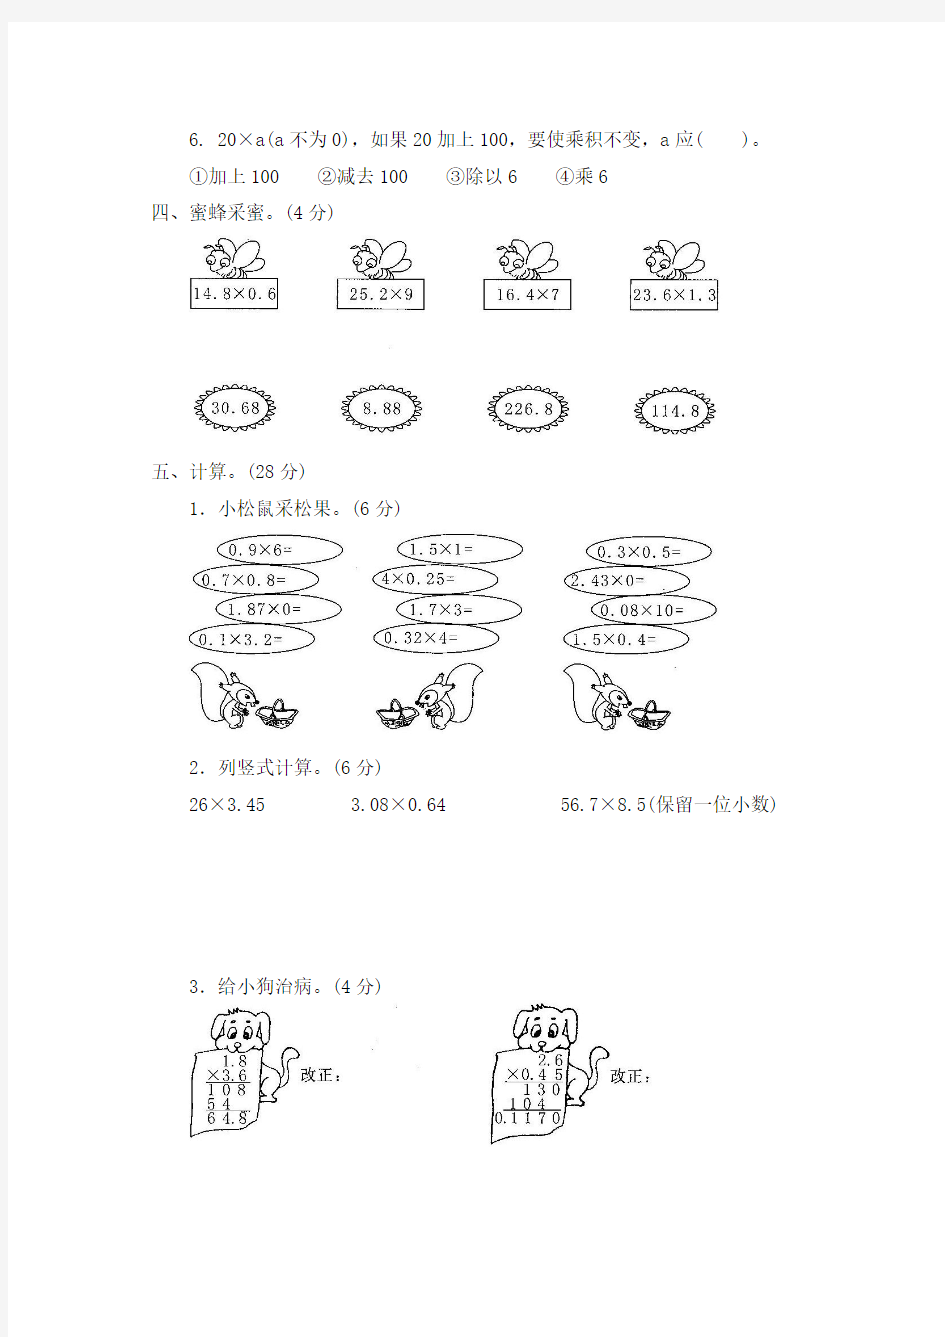 【新】人教版小学数学5五年级上册全册测试卷(含答案)